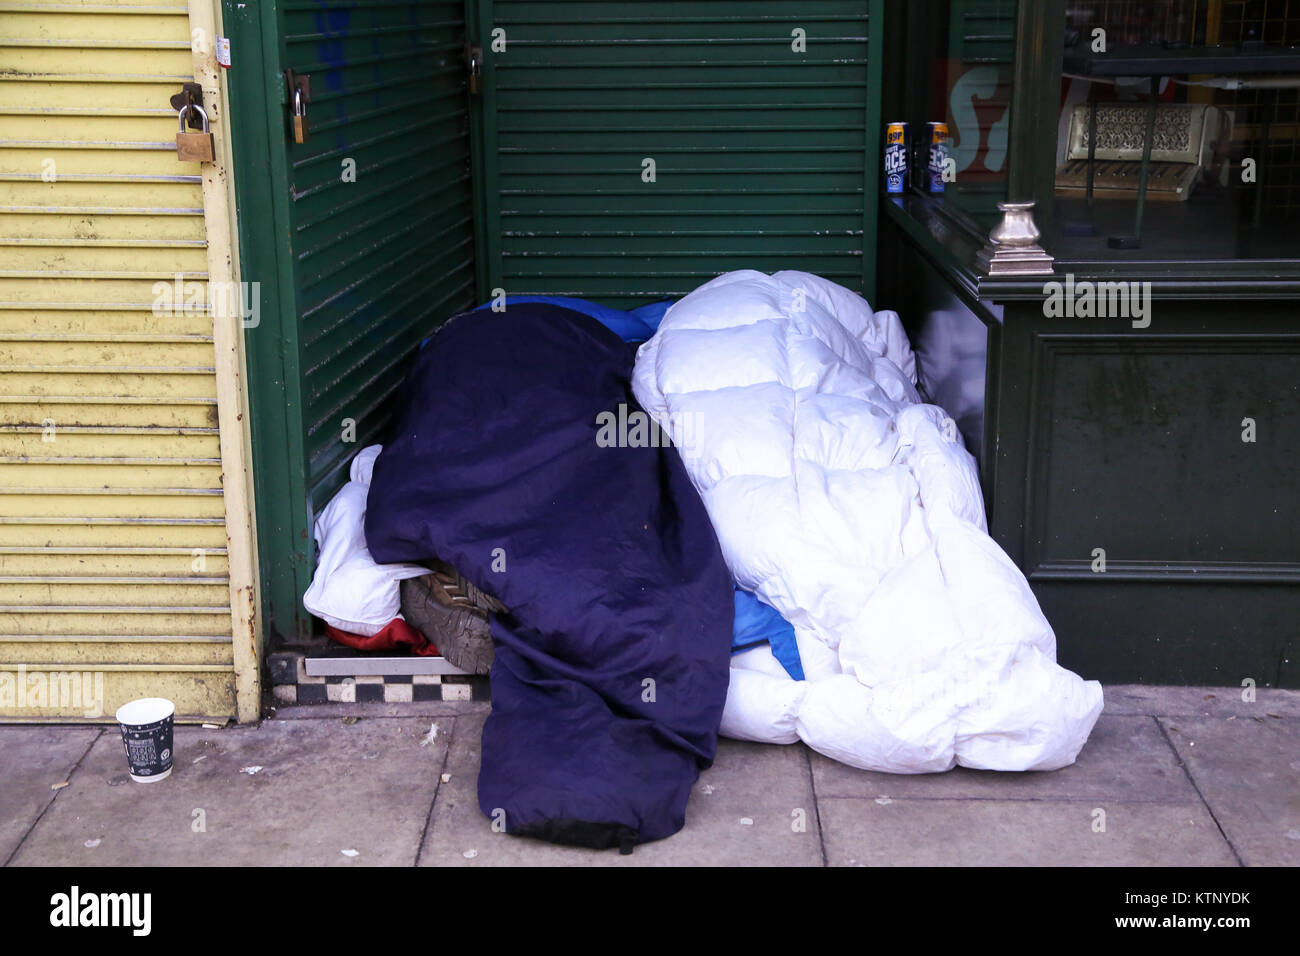 Le nord de Londres, Royaume-Uni. 28 Dec, 2017. Deux personnes de dormir sur un sol très étroite avec l'écart entre les boutiques dans le nord de Londres après une nuit très froide. Selon le Comité des comptes publics plus de 9 000 personnes sont sans-abri dans les rues. Credit : Dinendra Haria/Alamy Live News Banque D'Images